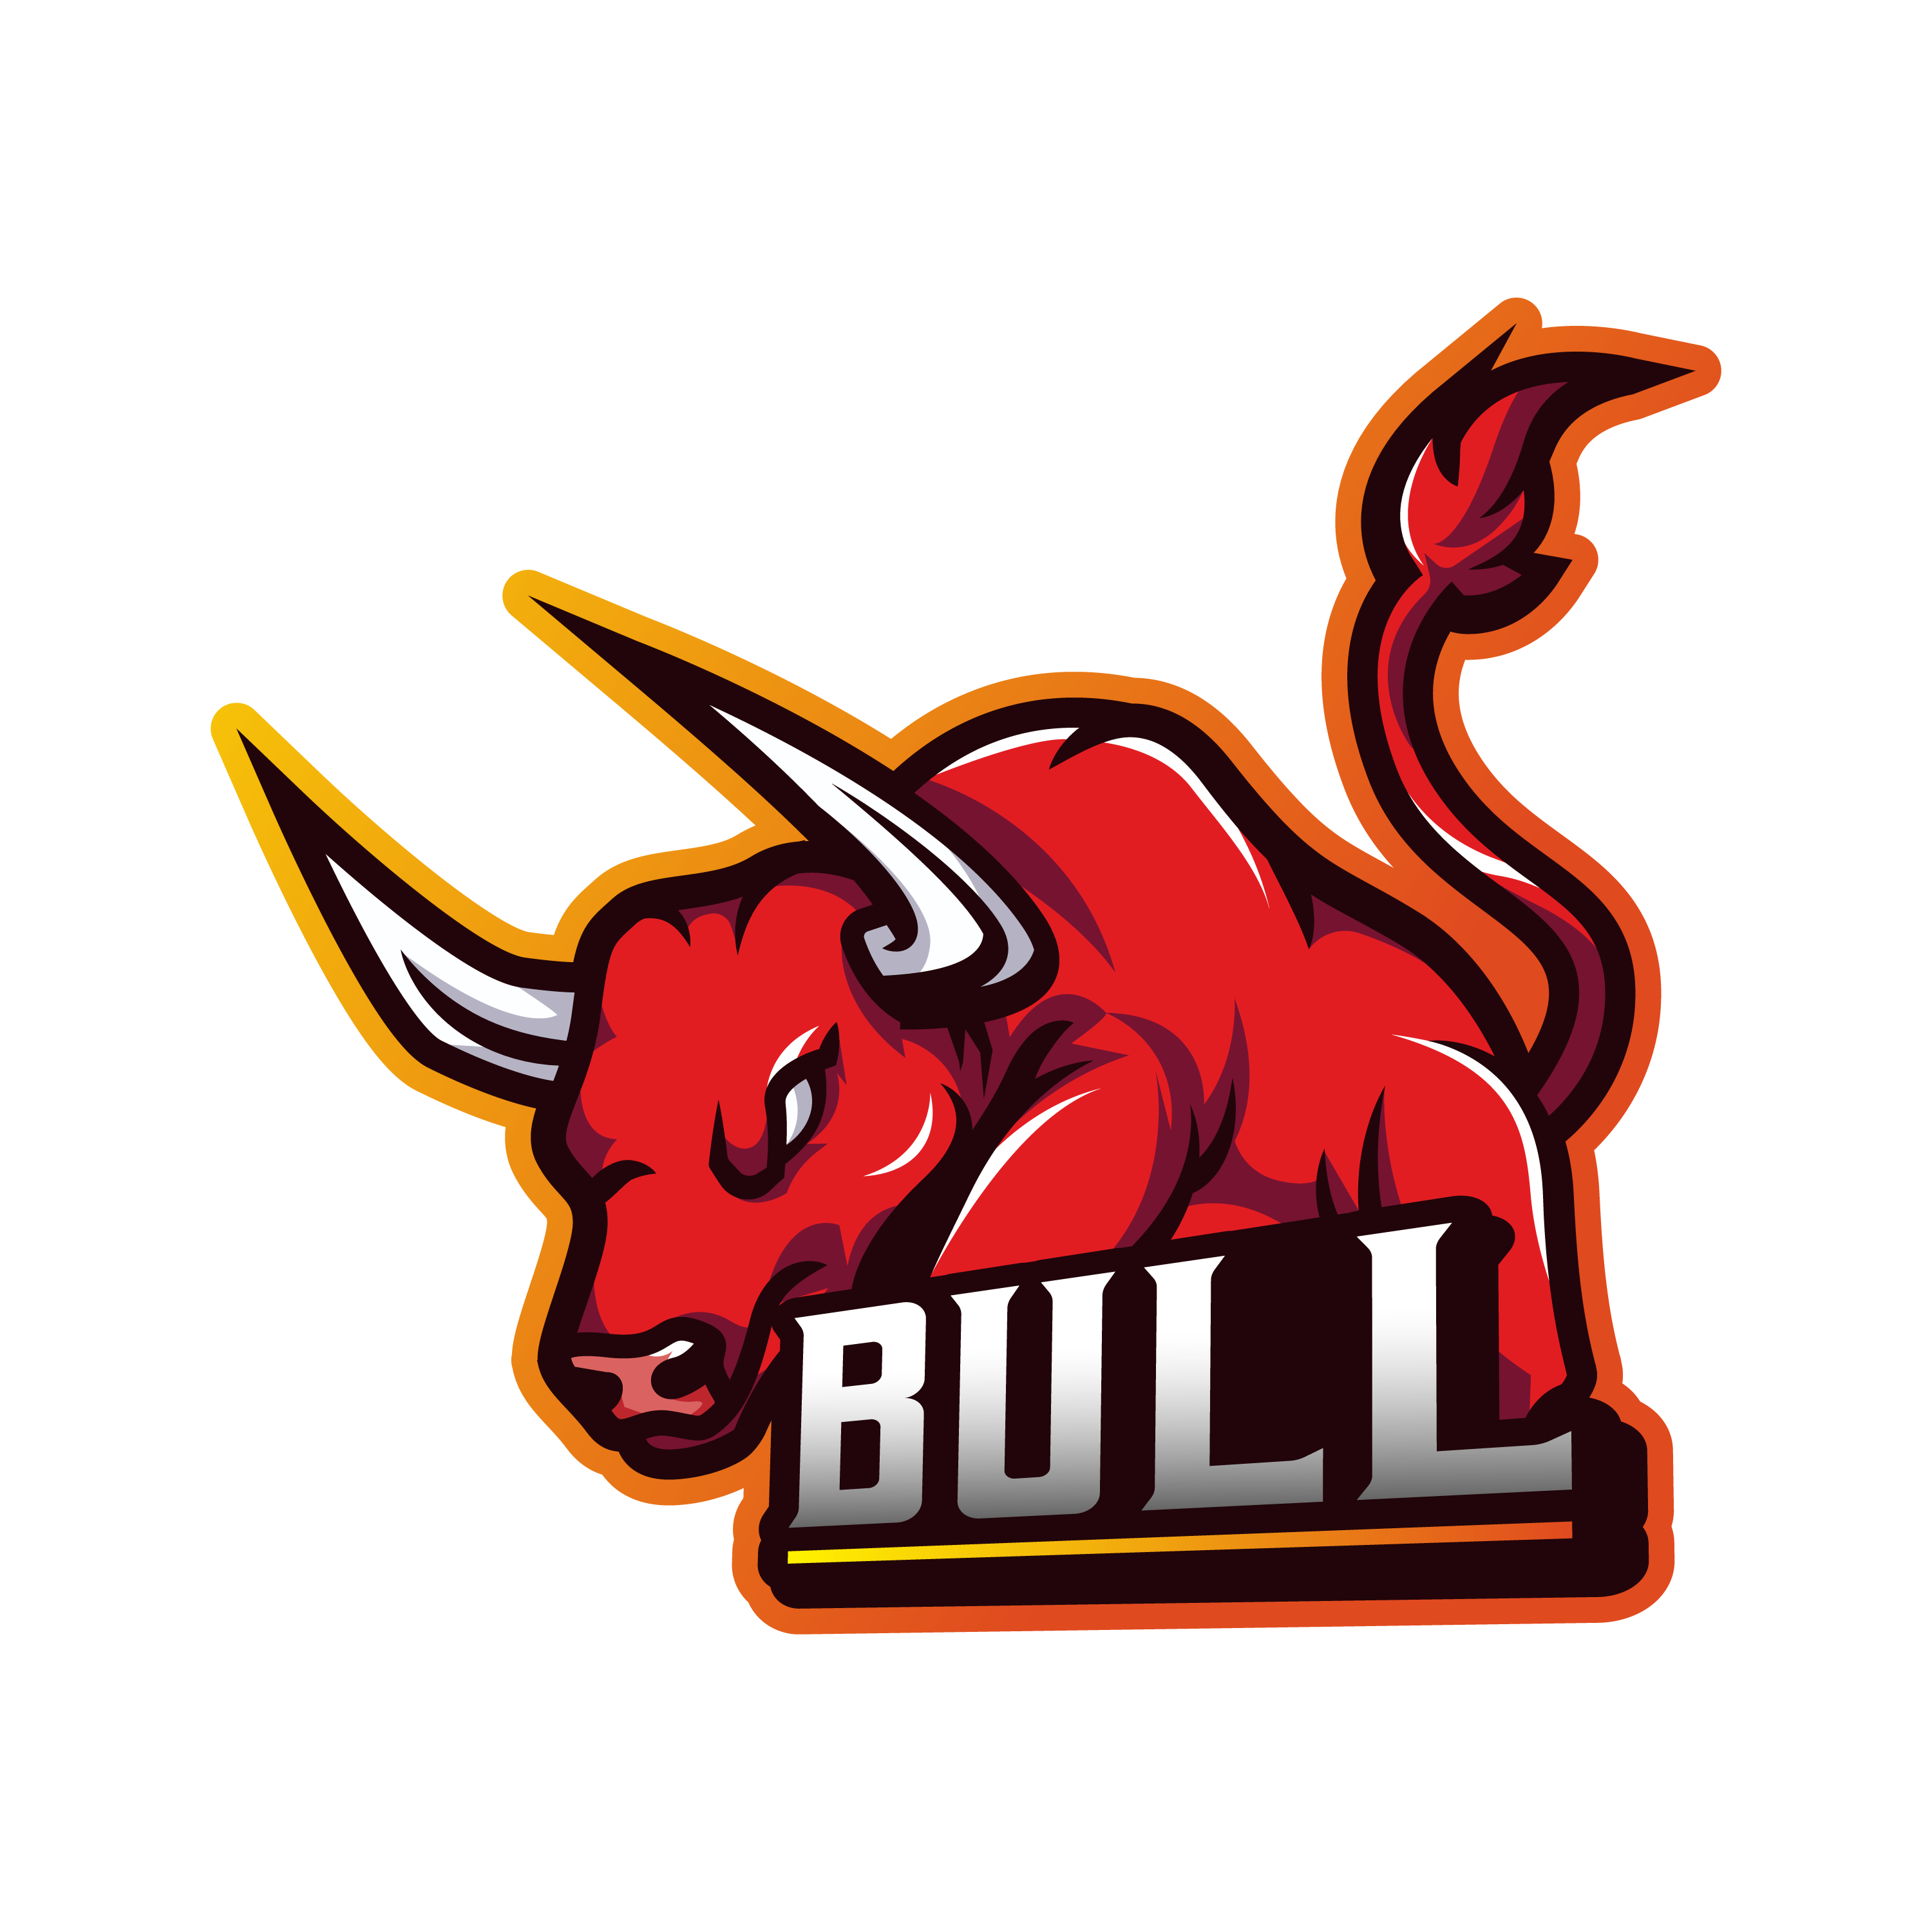 Bull Mascot Gaming Logo Template